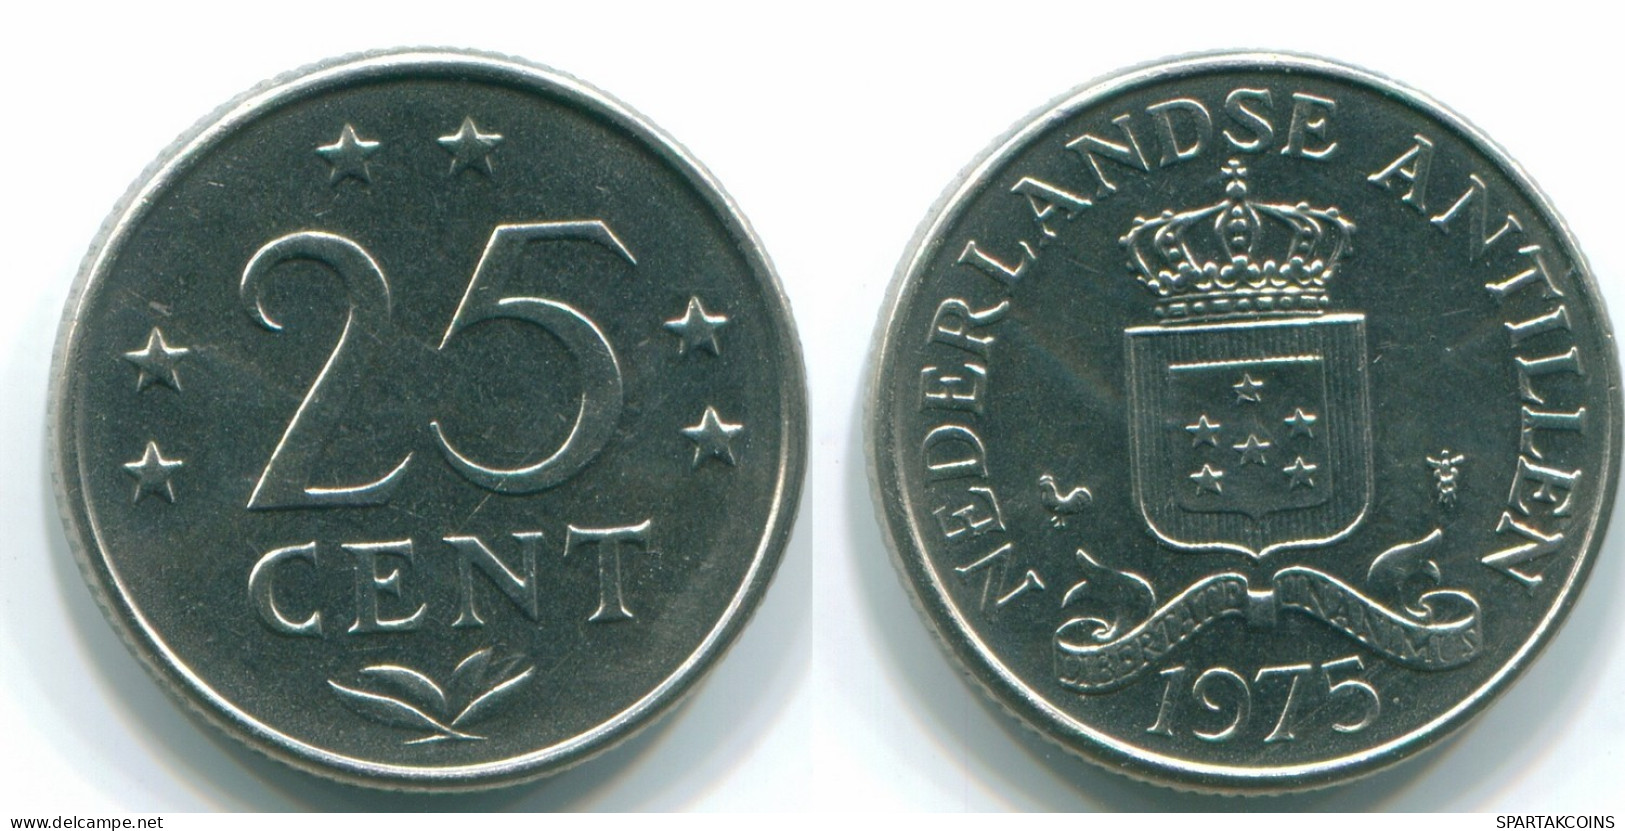 25 CENTS 1975 NIEDERLÄNDISCHE ANTILLEN Nickel Koloniale Münze #S11631.D.A - Niederländische Antillen